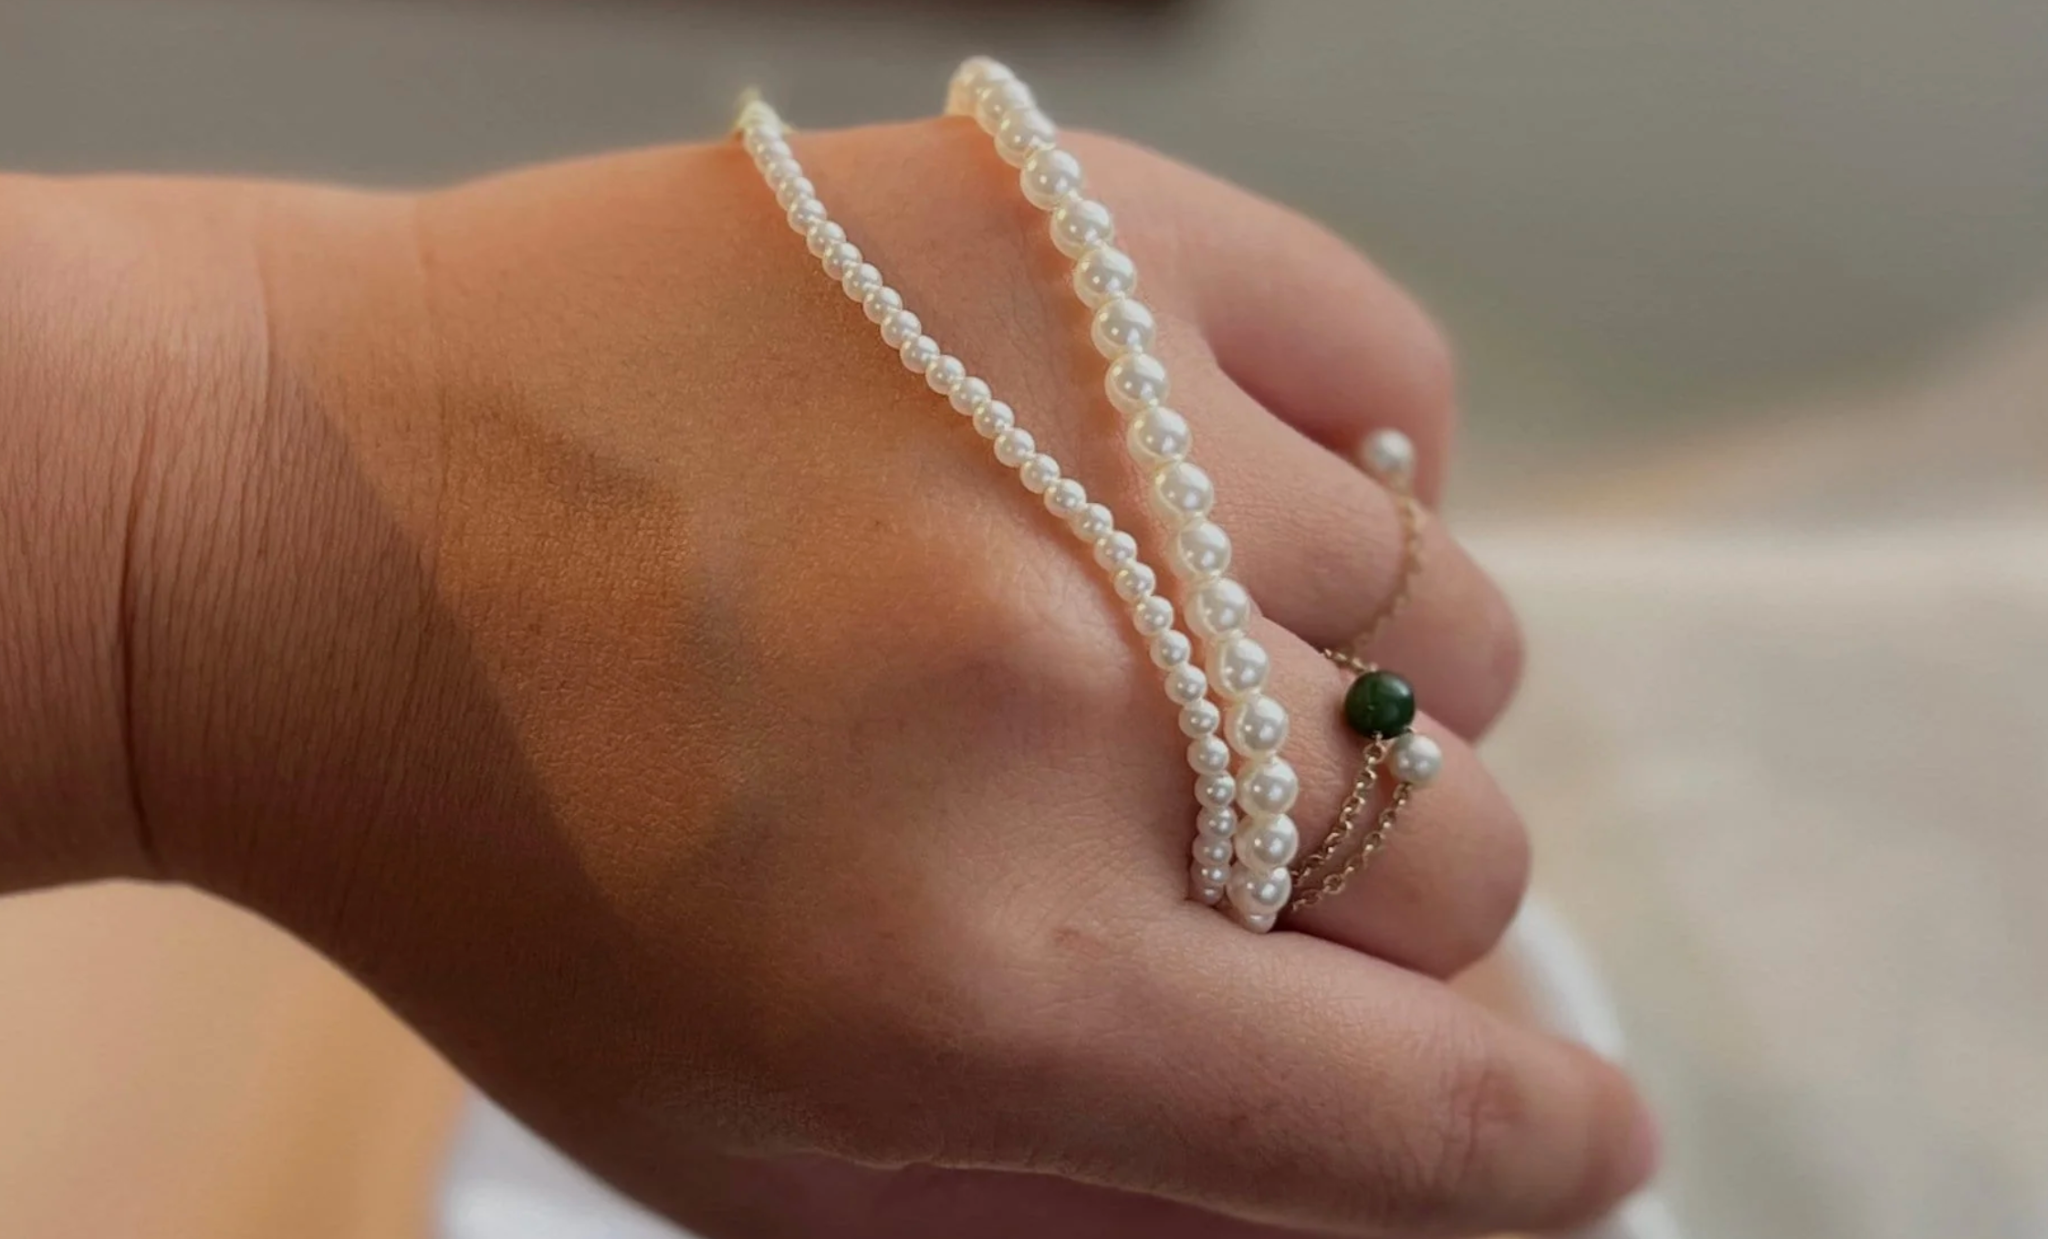  Vòng cổ nhí Ngọc trai trắng 3 li đến 5 li phong cách trẻ trung sành điệu thương hiệu Opal . Quà tặng Charm Bạc 150k 